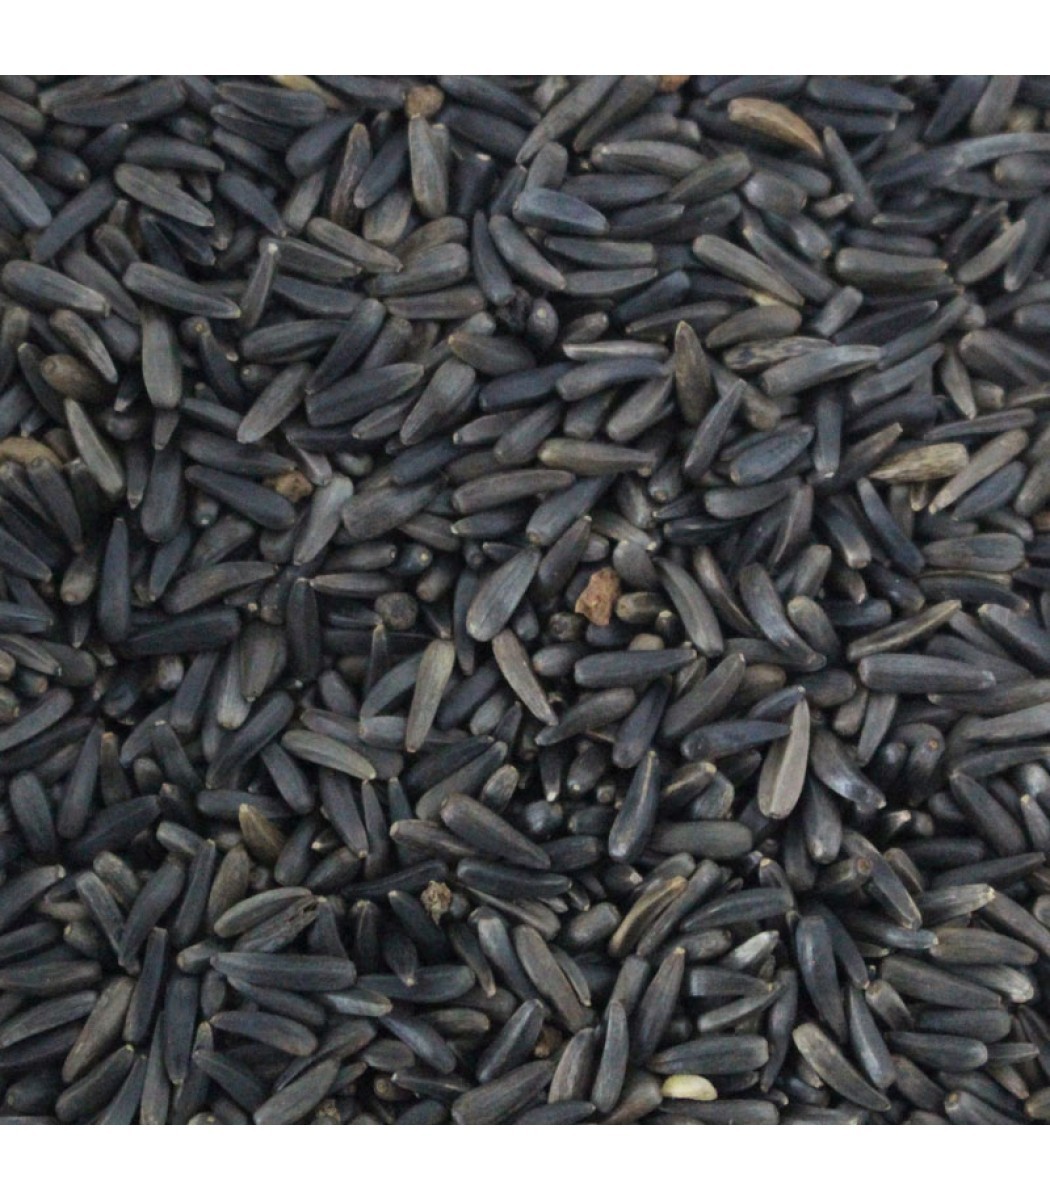 Niger Seeds